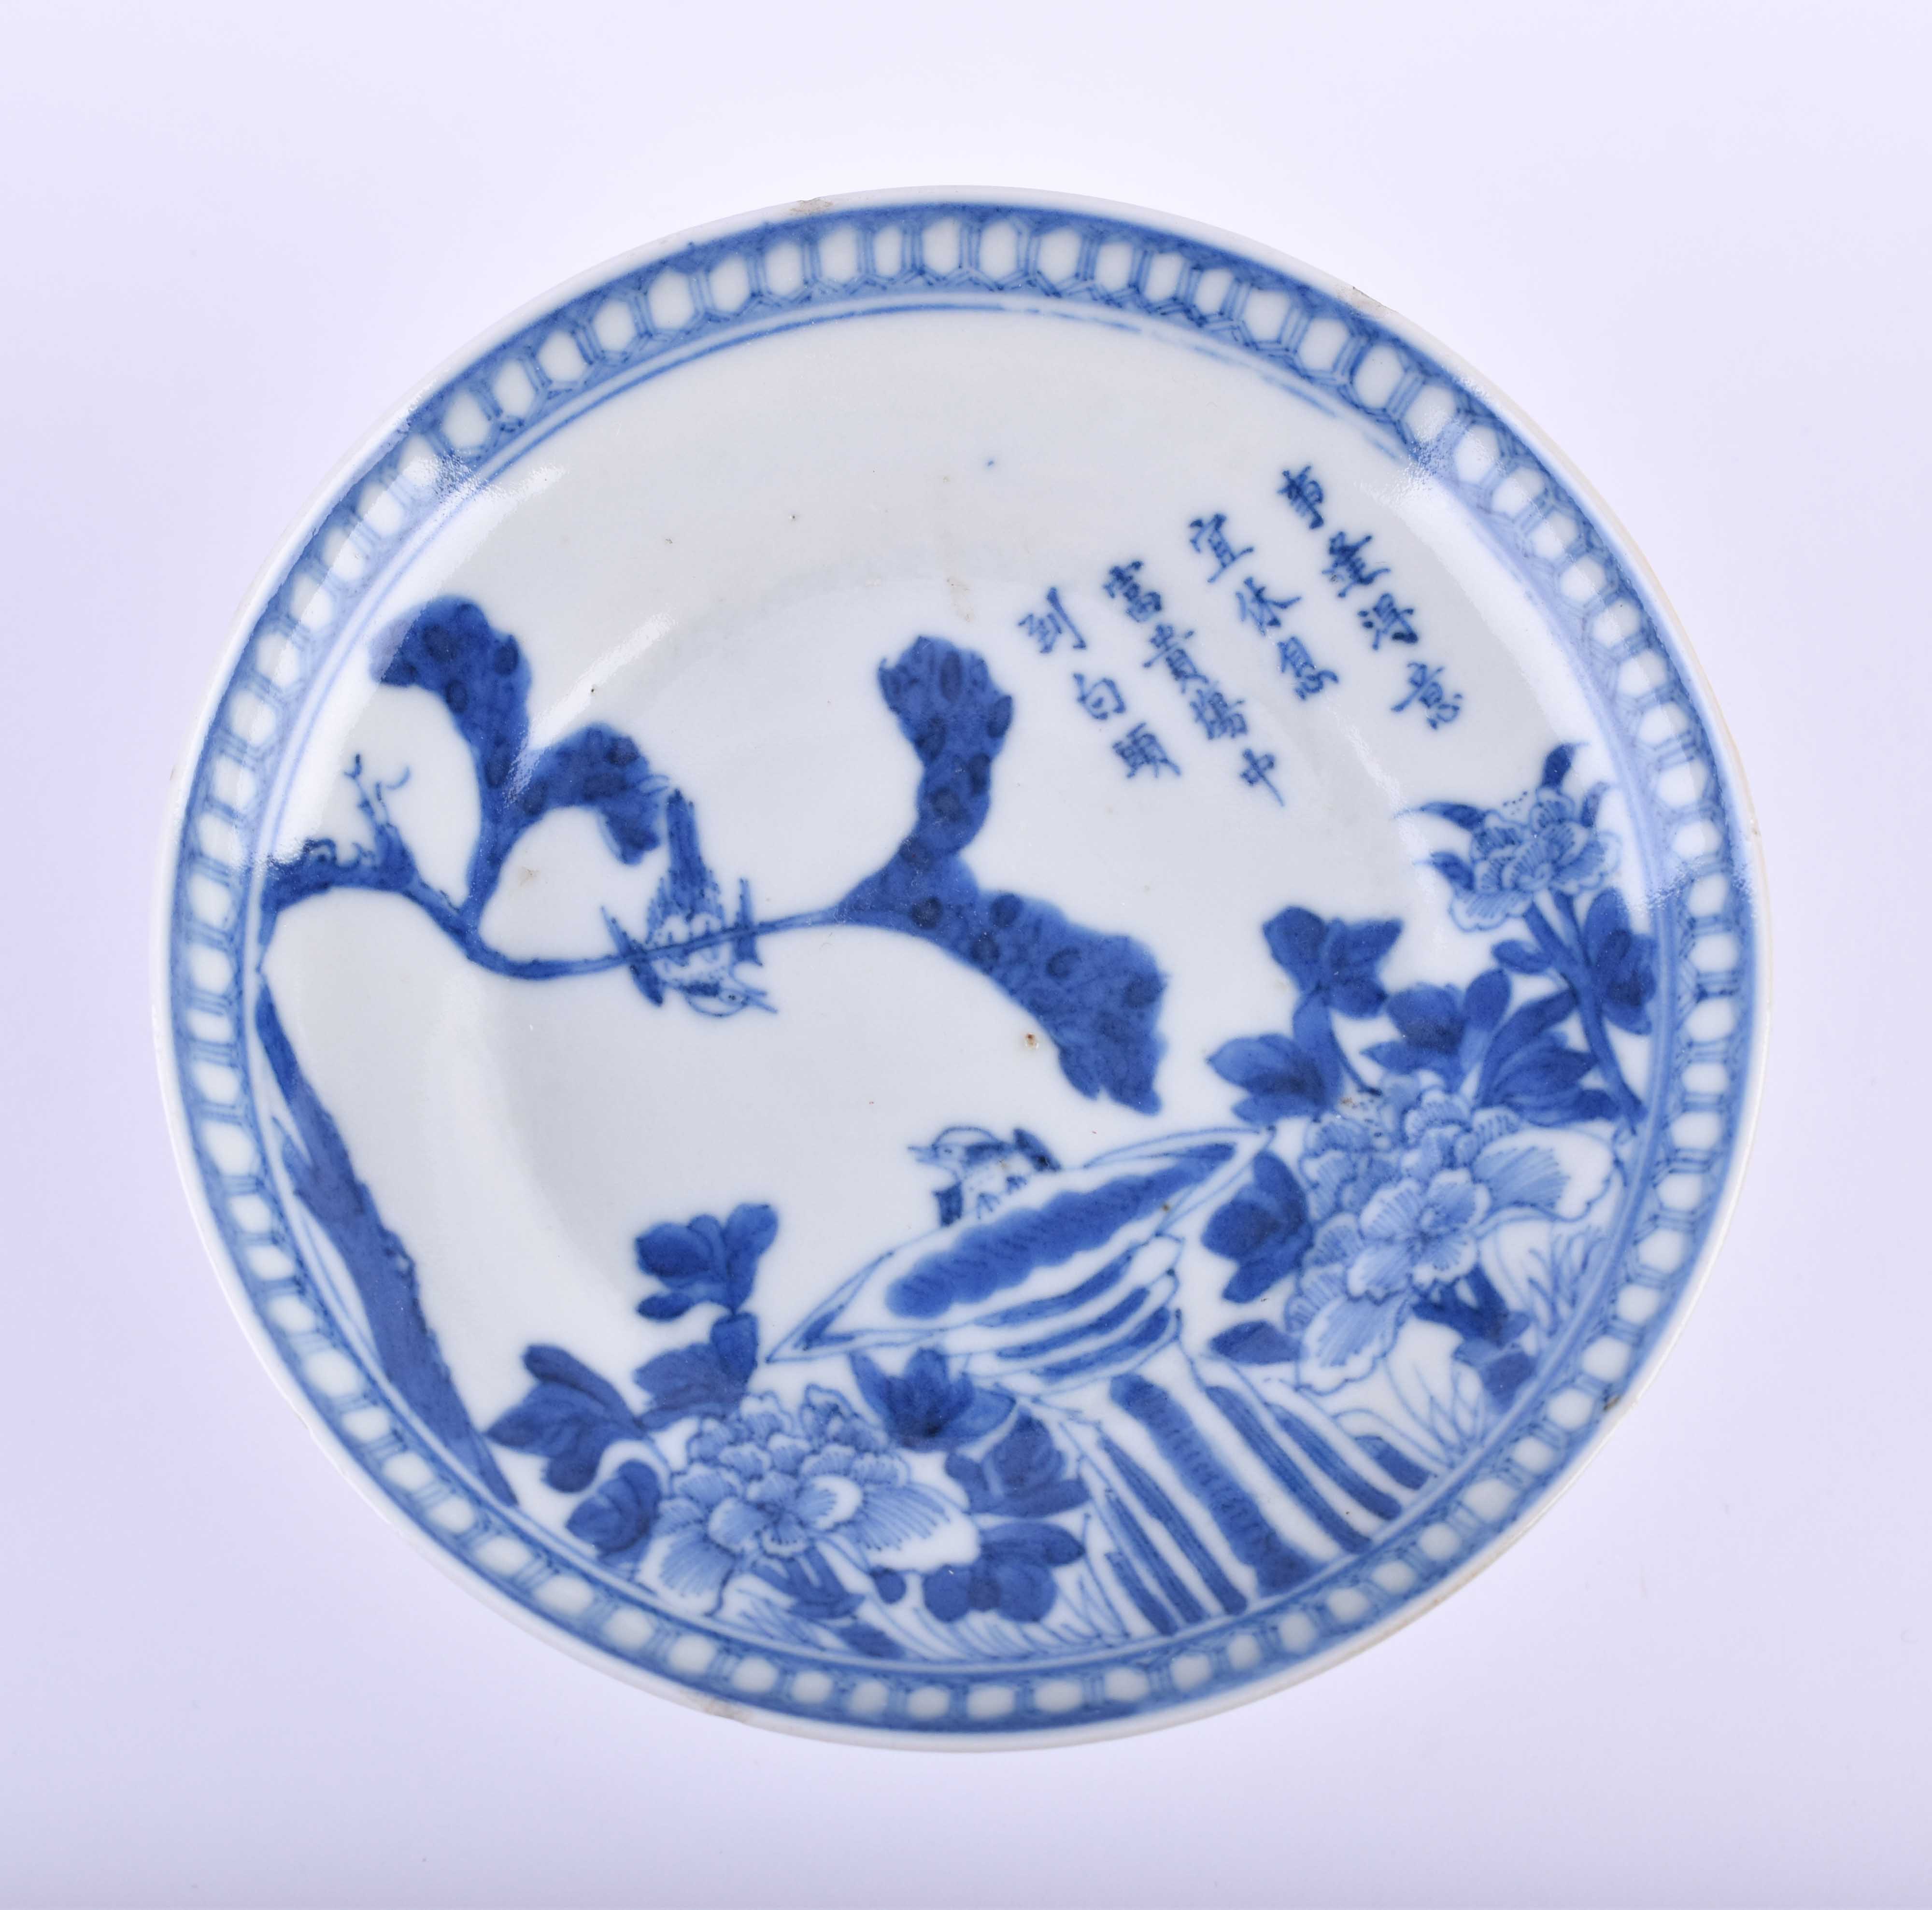  Foot bowl China Kangxi dynasty - Image 4 of 6